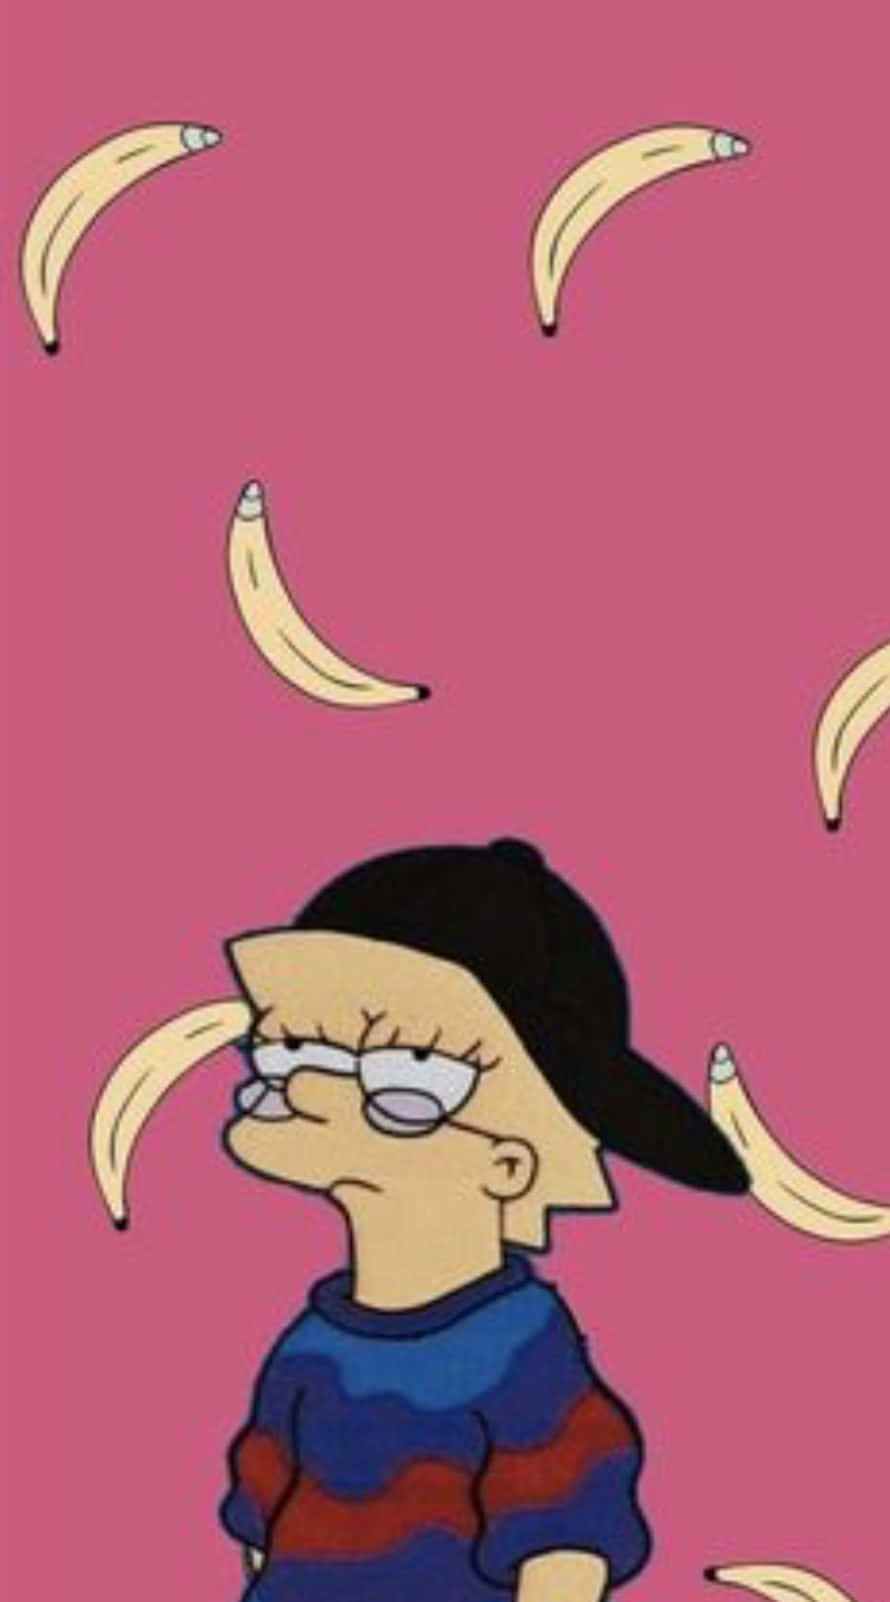 Sad Lisa Simpson With Bananas Wallpaper